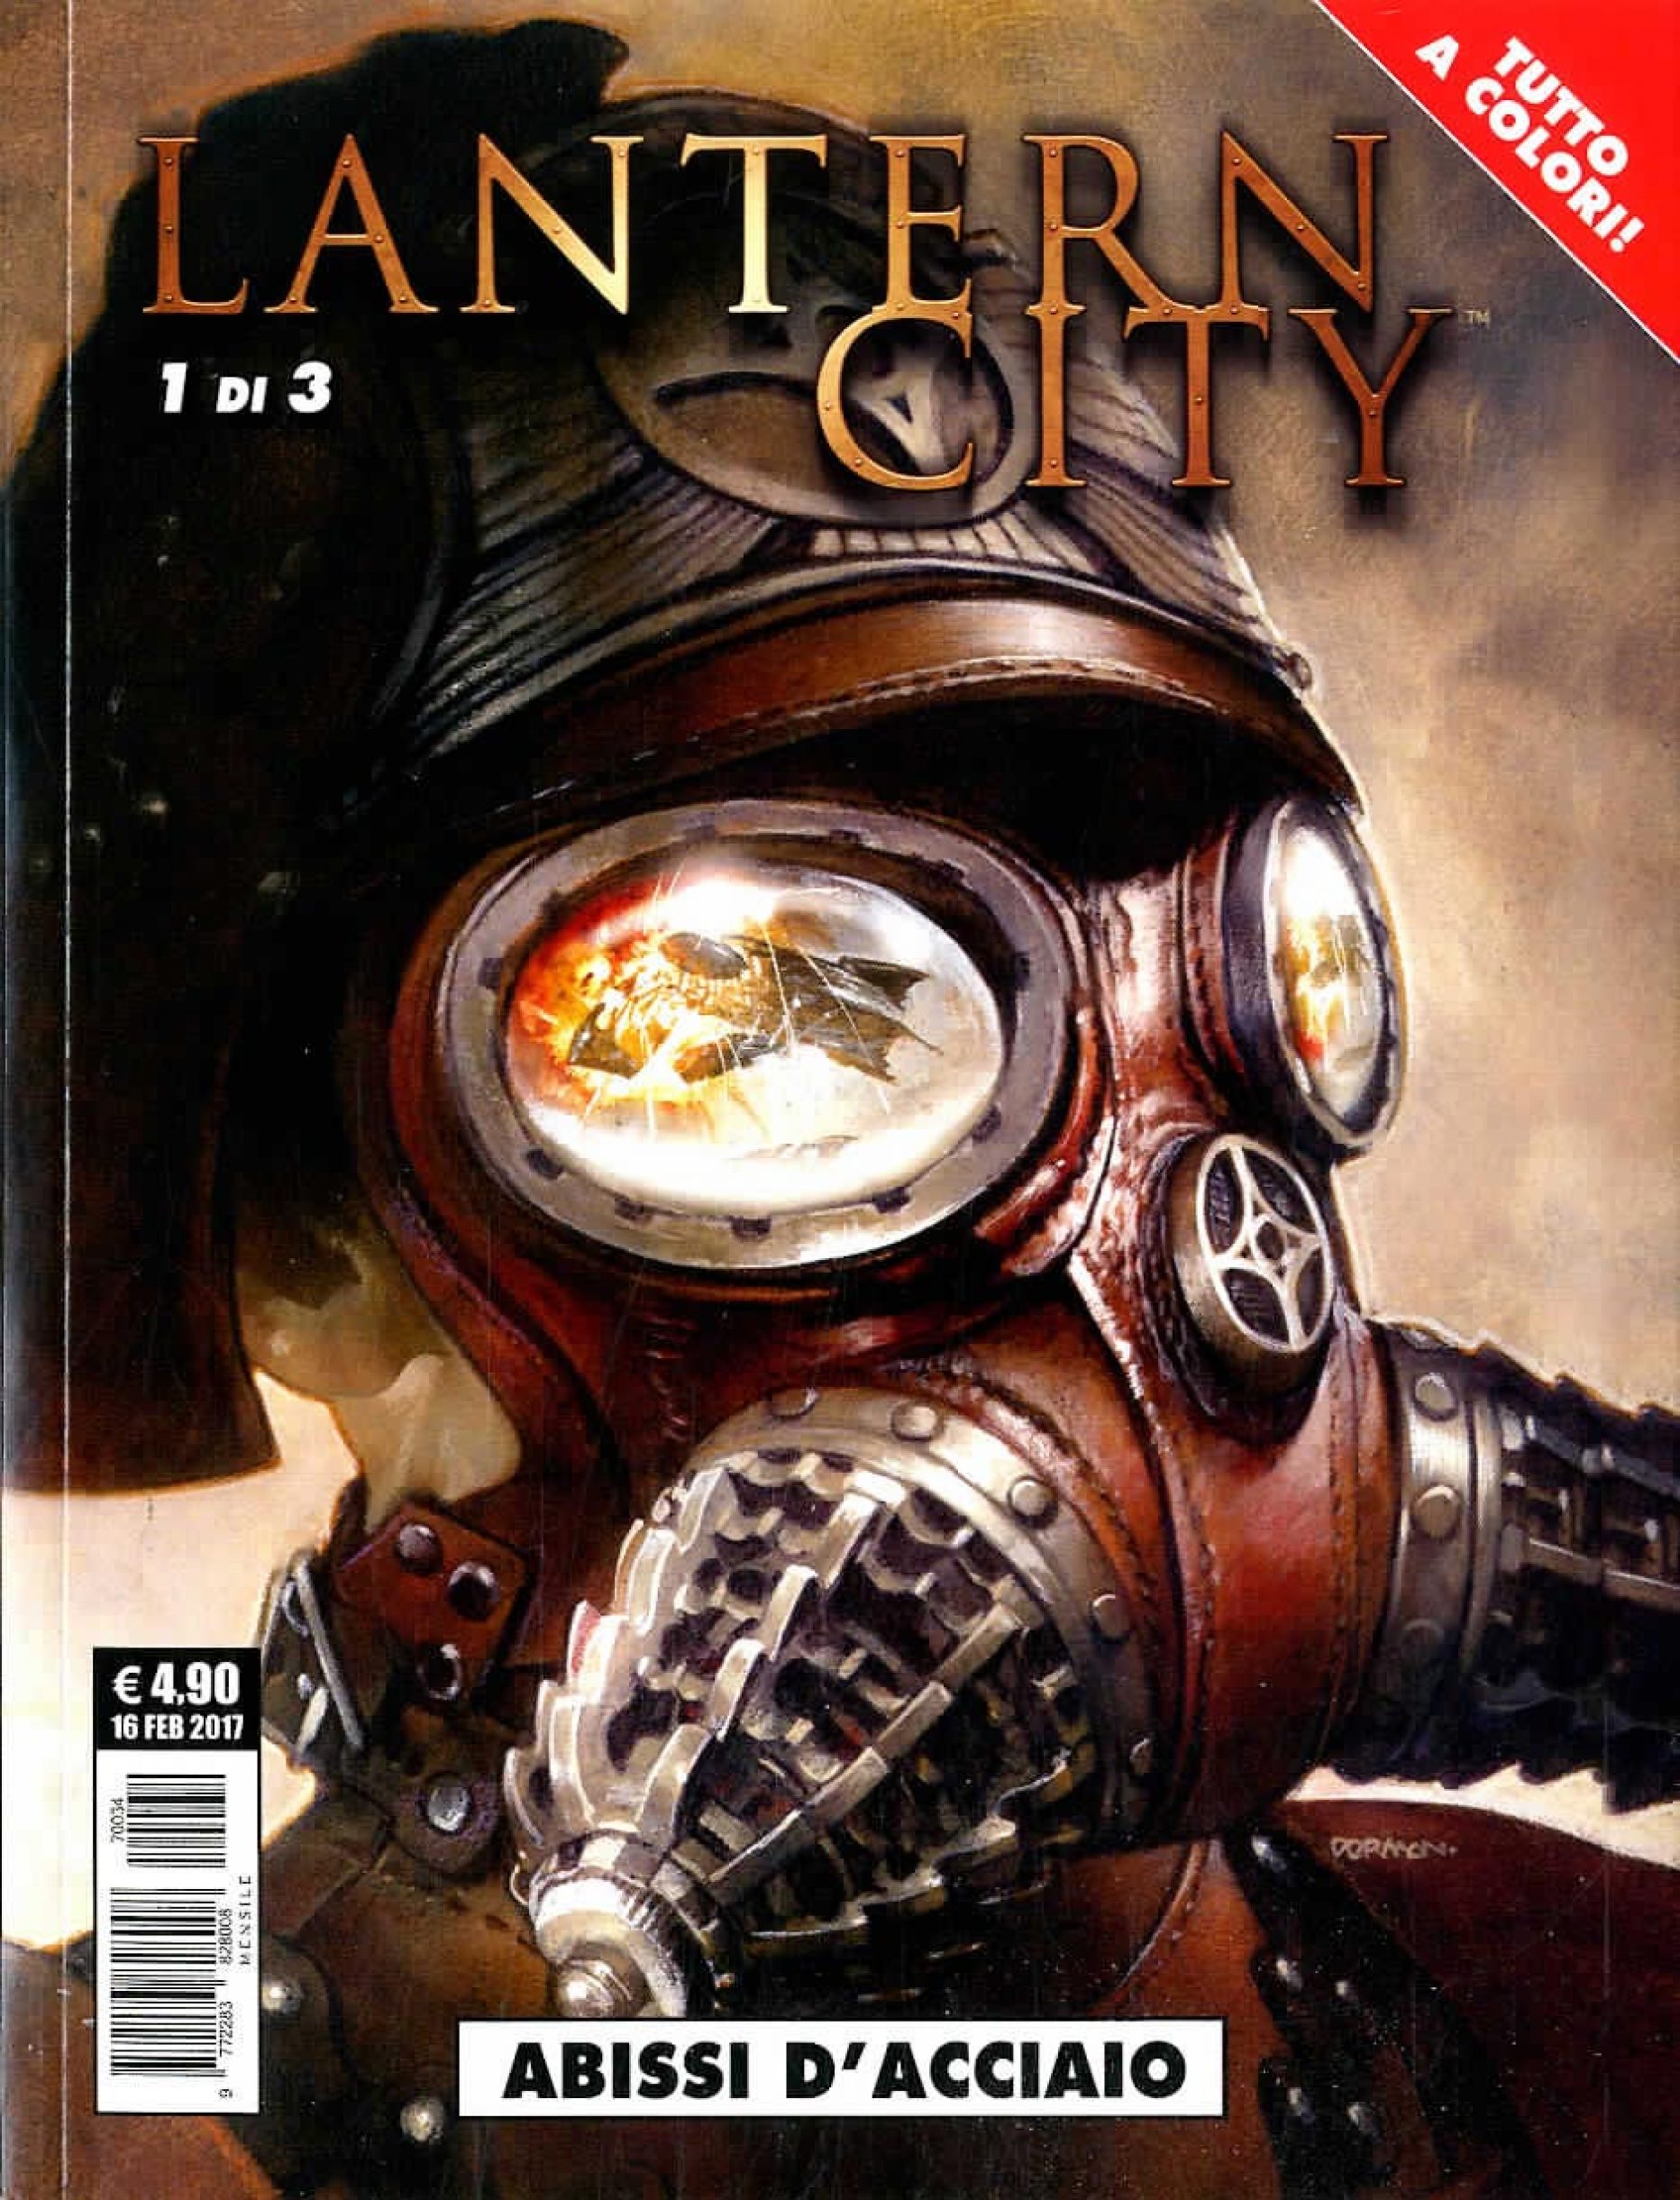 Nuvolette #14: Lantern City